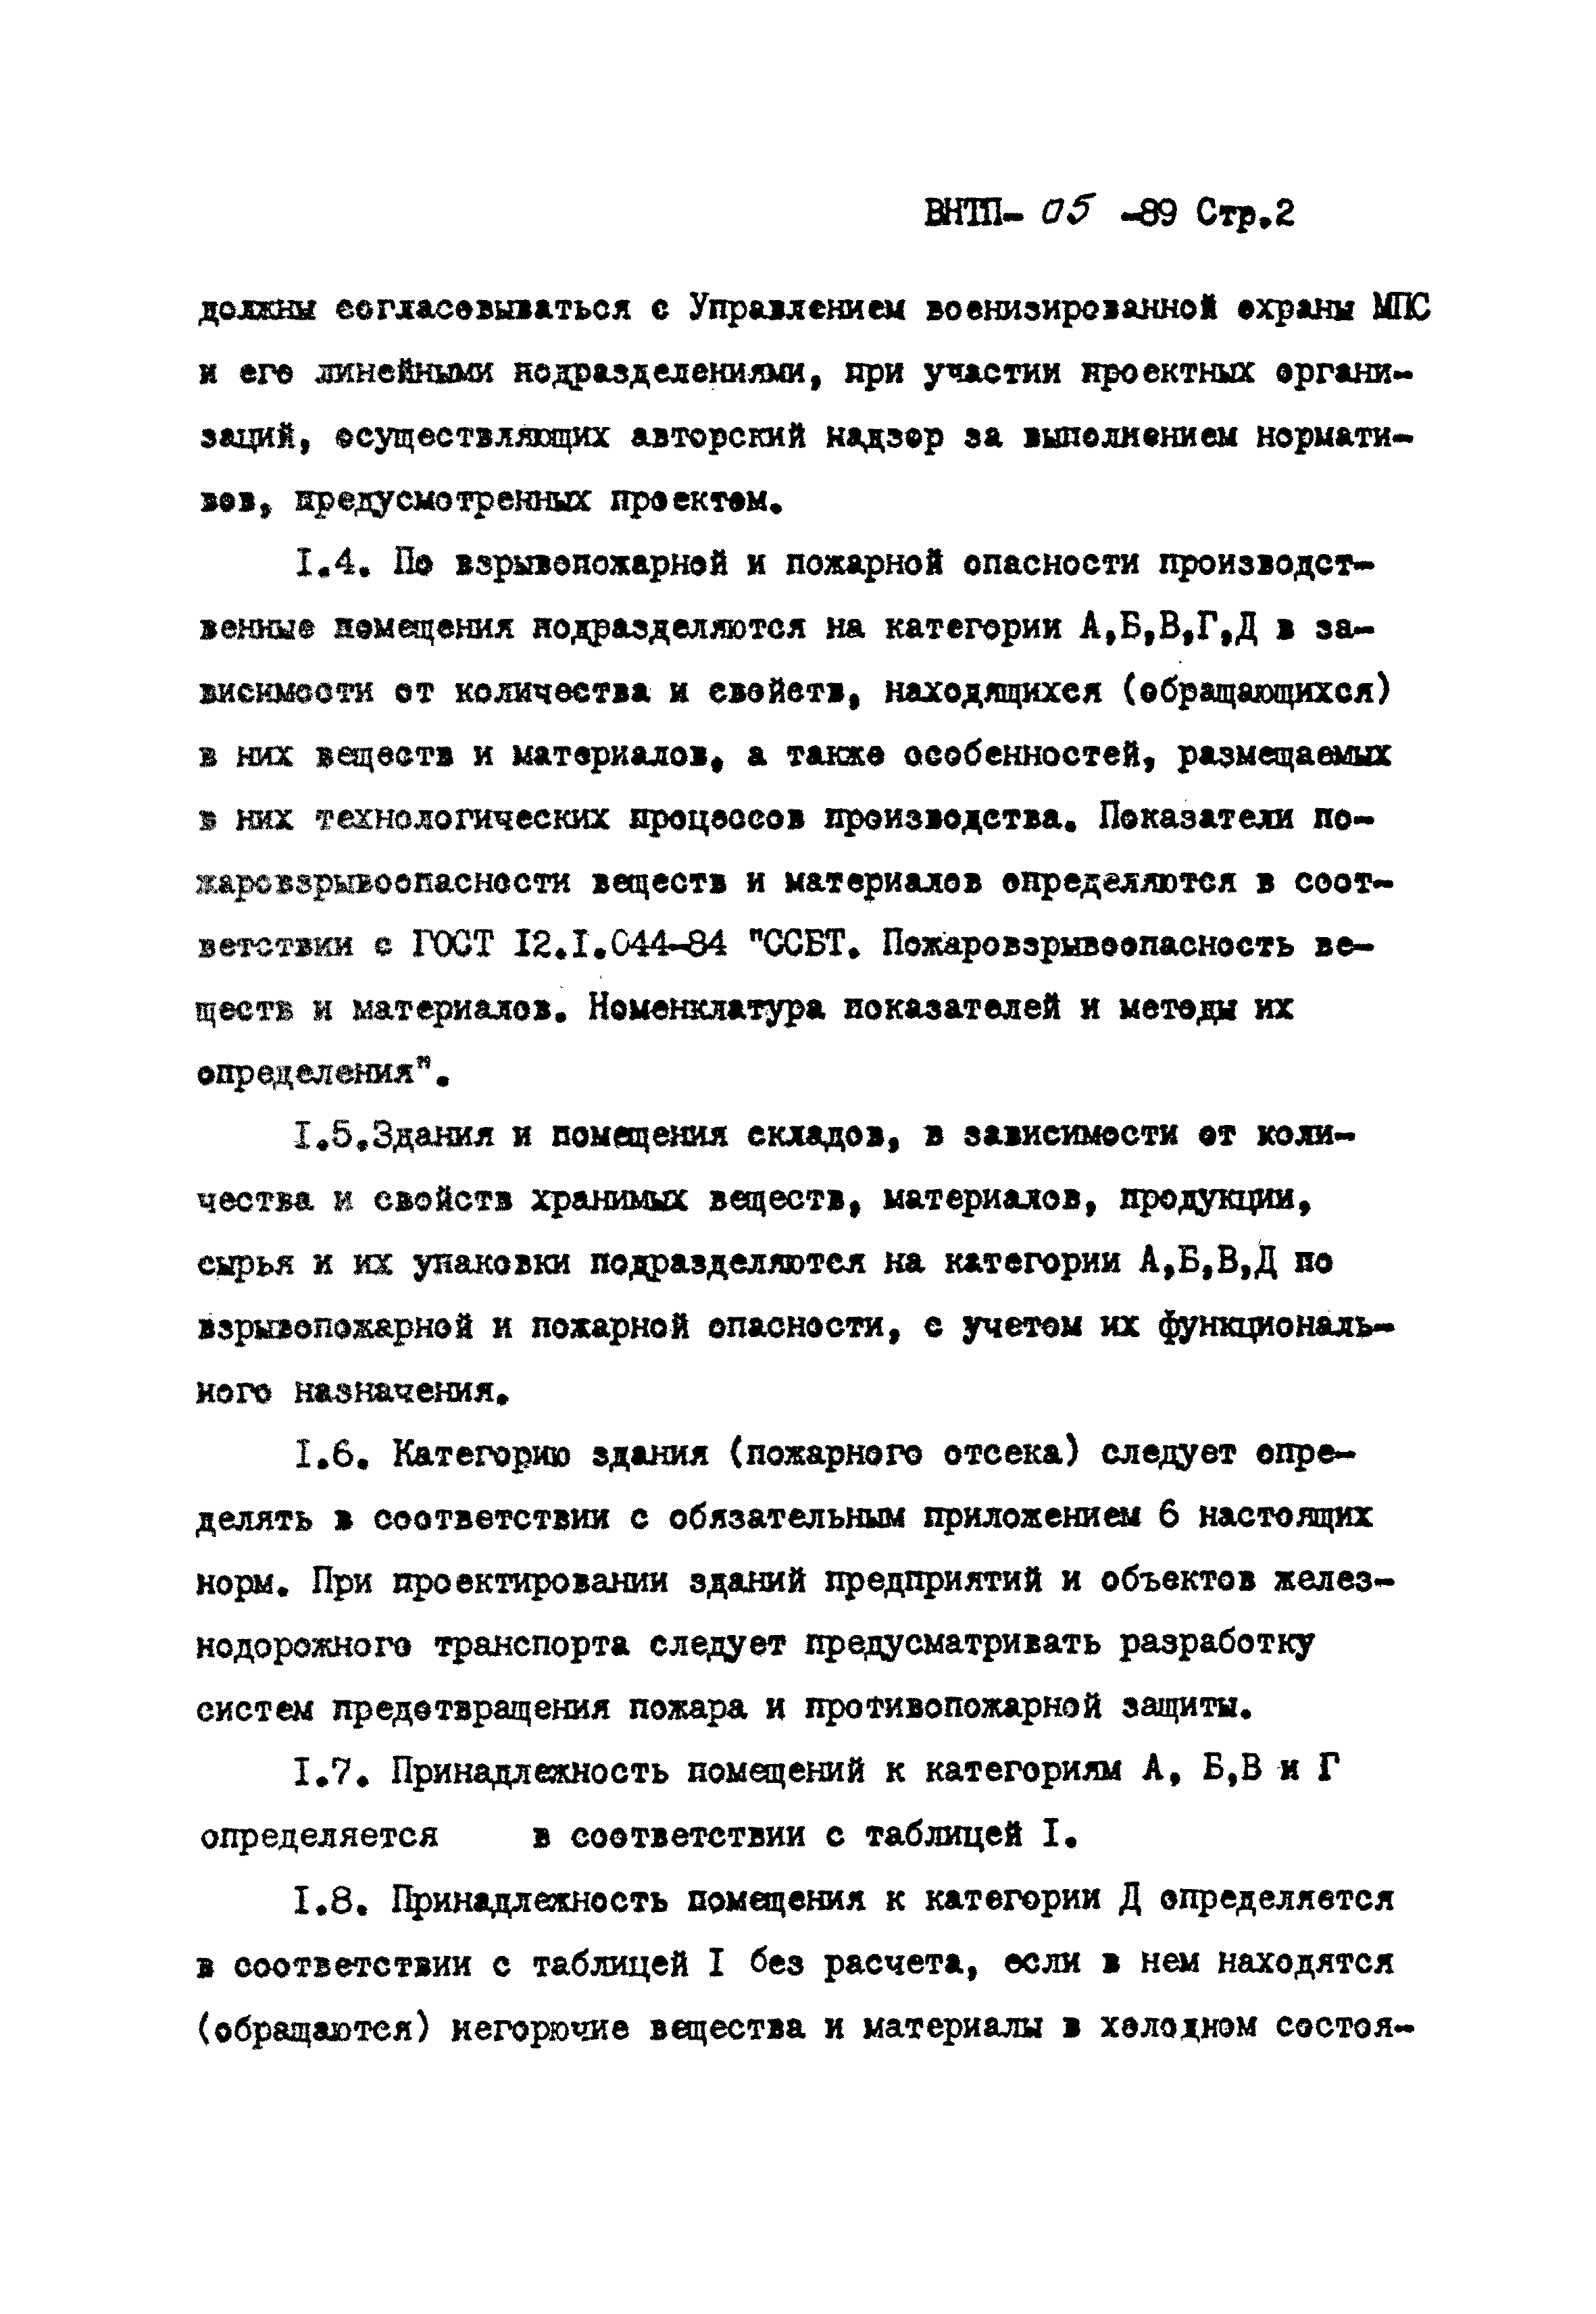 ВНТП 05-89/МПС России